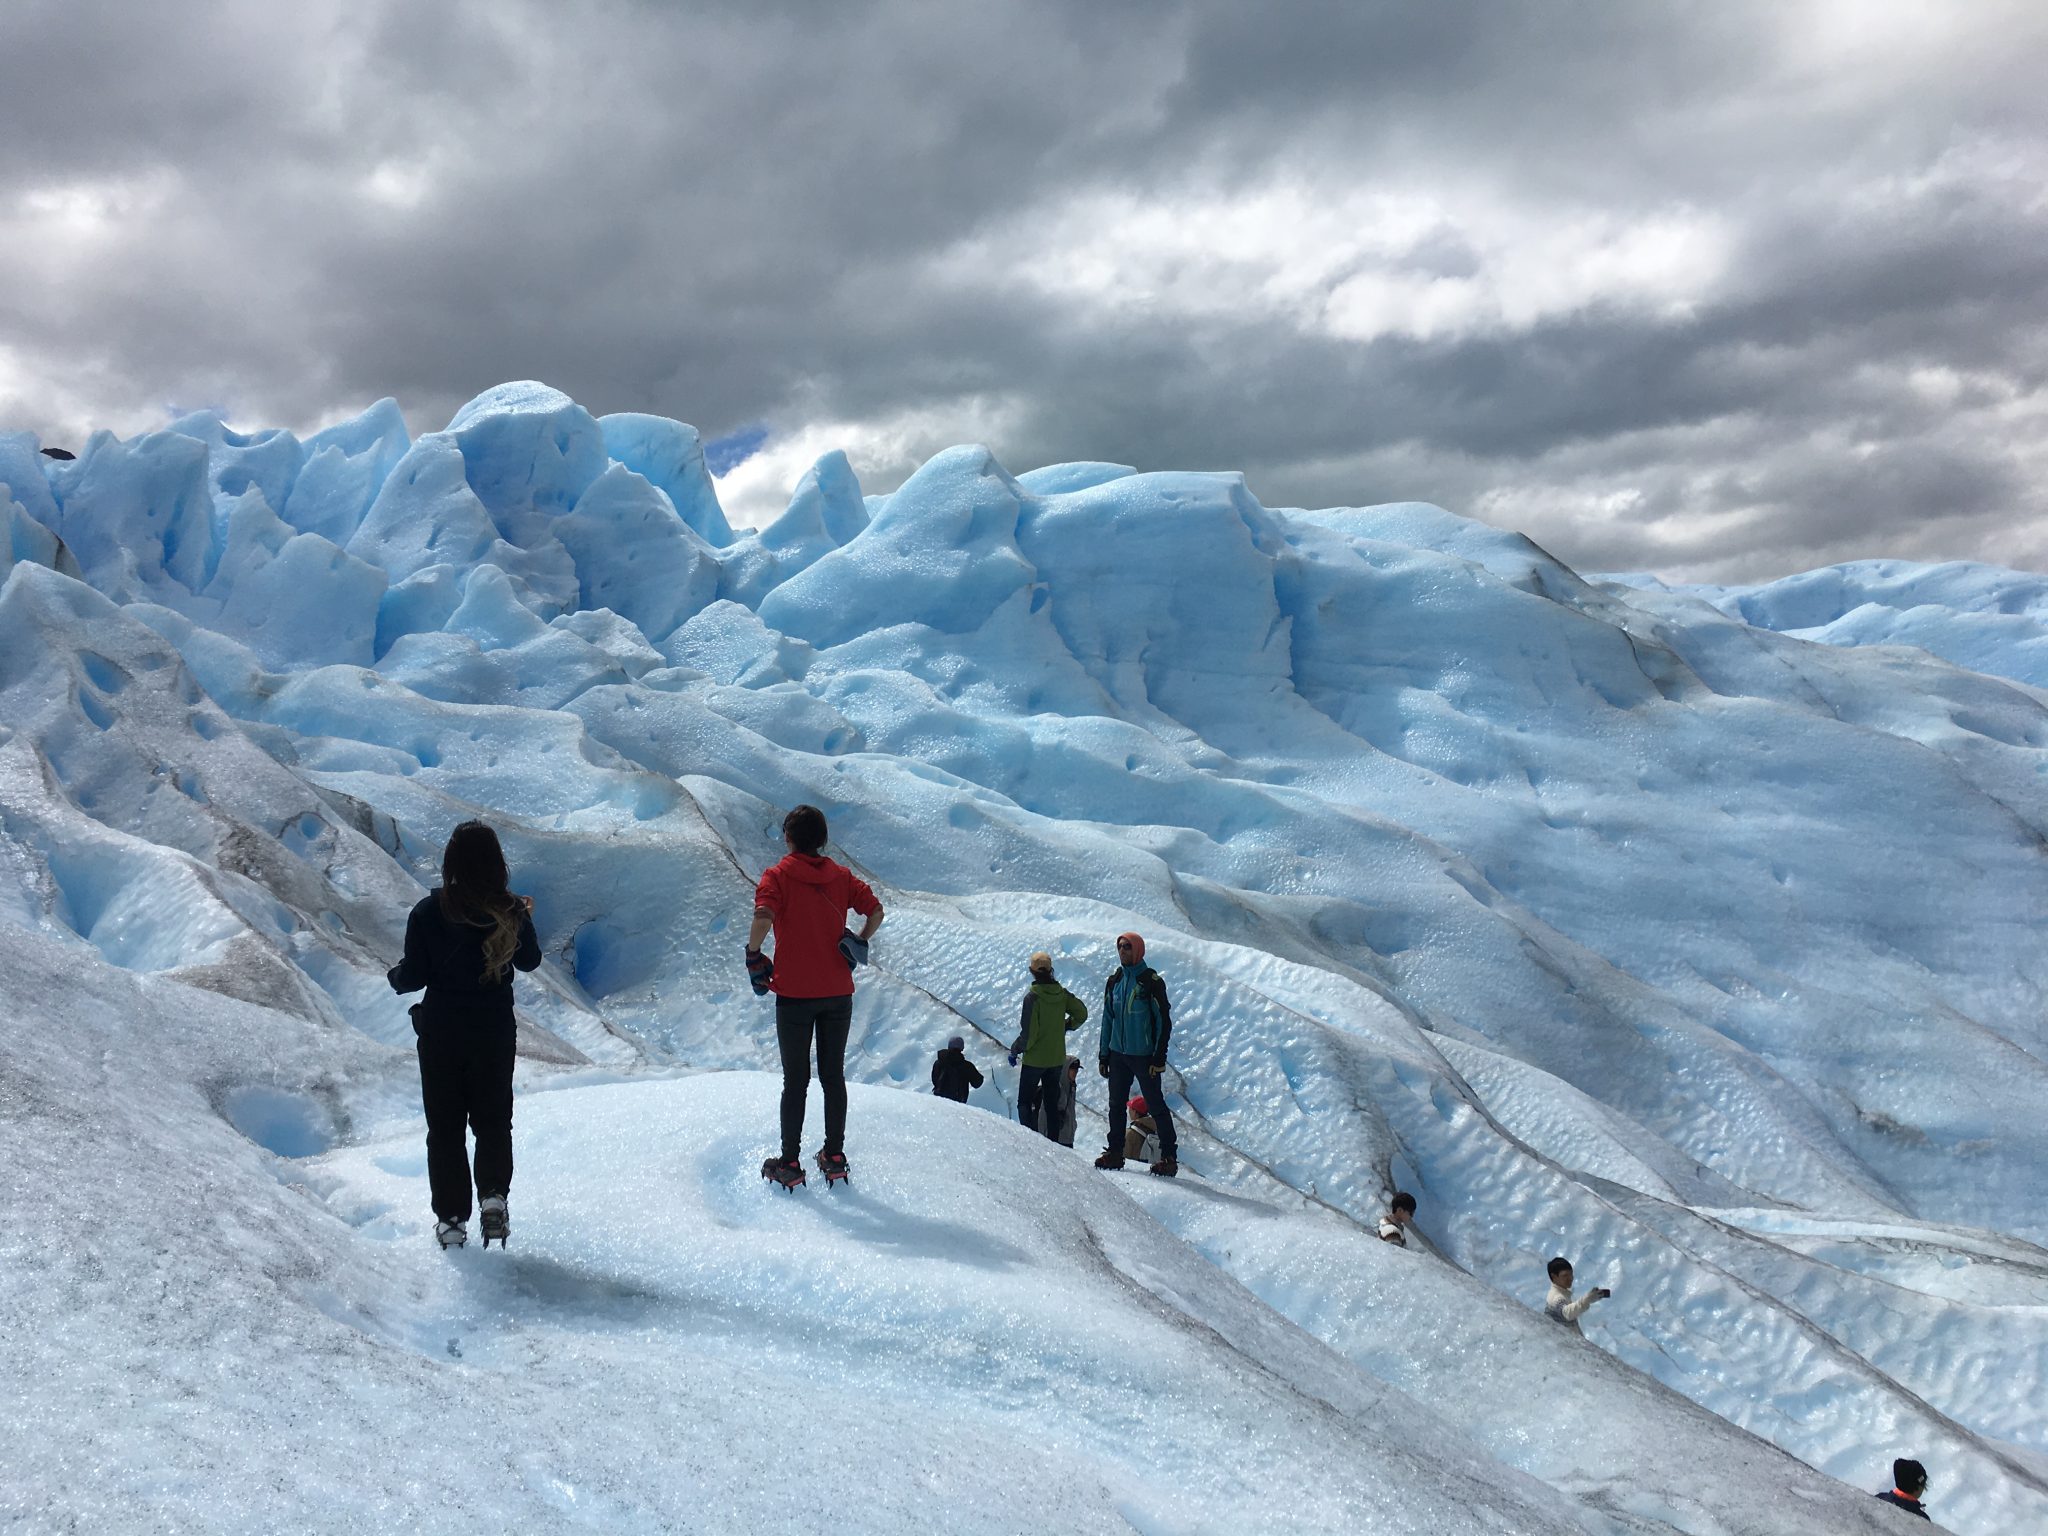 ペリトモレノ氷河トレッキングツアーの行き方 料金 ベストシーズン 詳細まとめ チームトラベラー 海外旅行 世界一周のバイブル